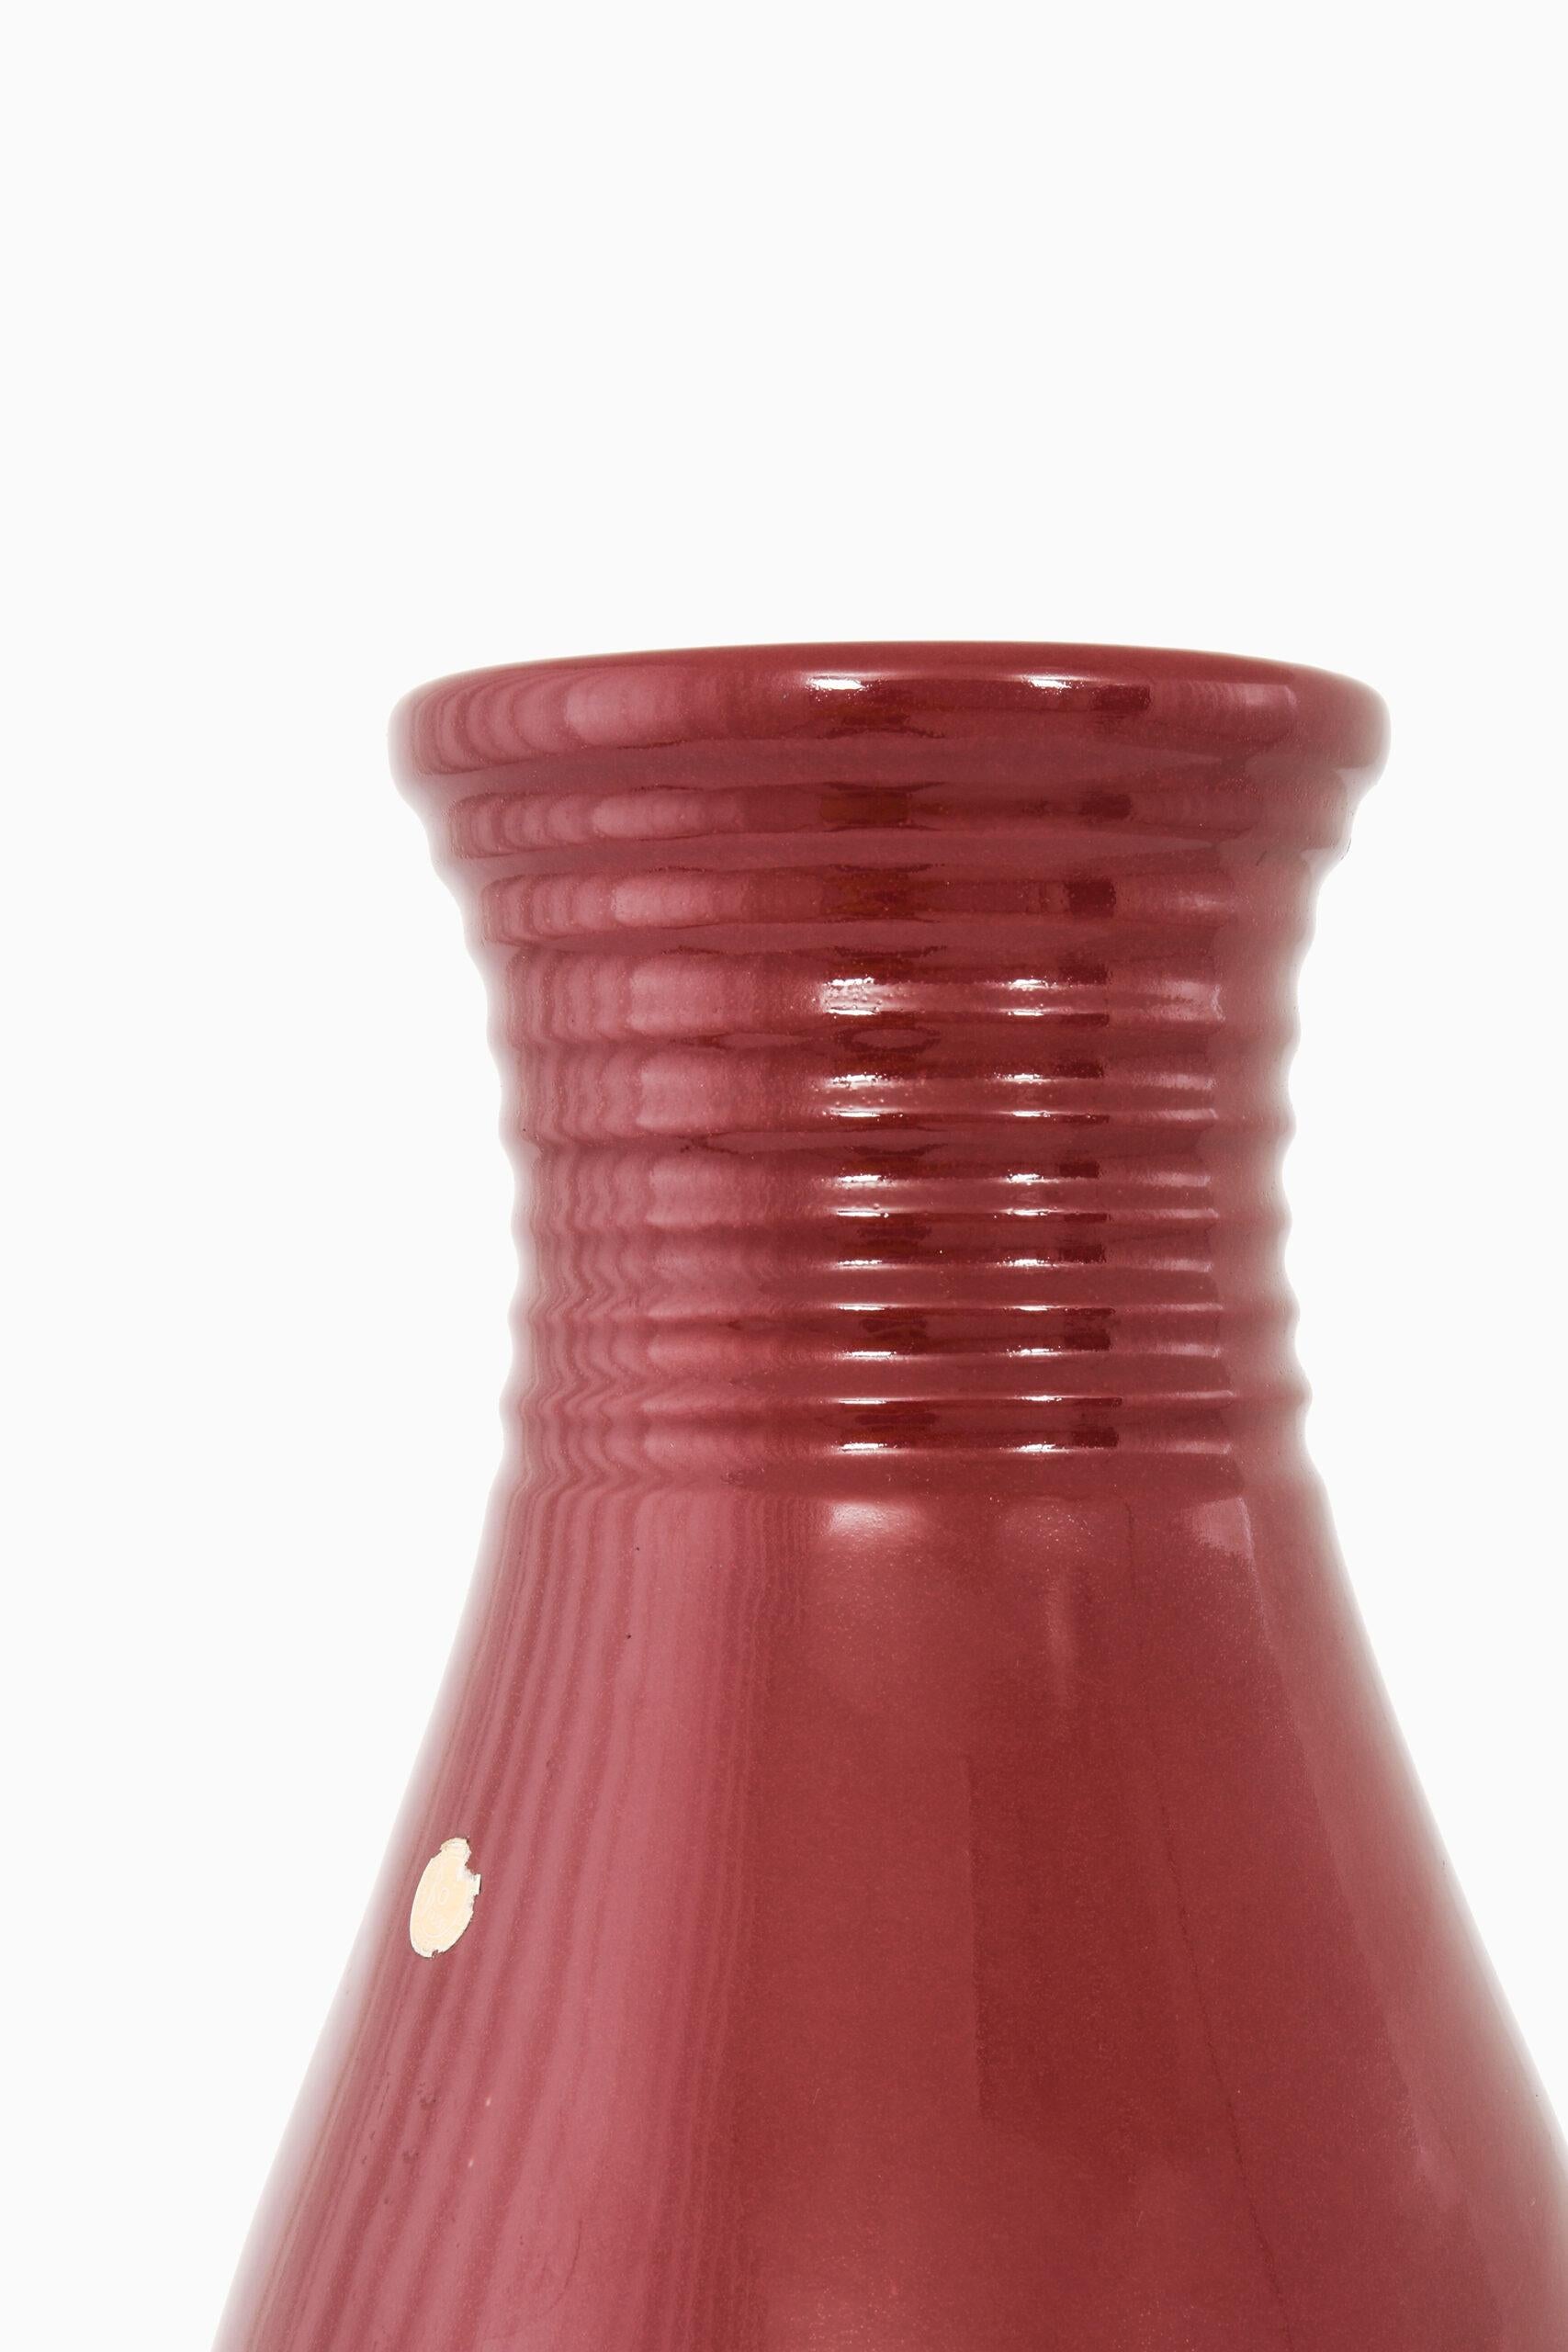 Vase de sol en céramique émaillée conçu par Ewald Dahlskog. Produit par Bobergs Fajansfabrik en Suède.